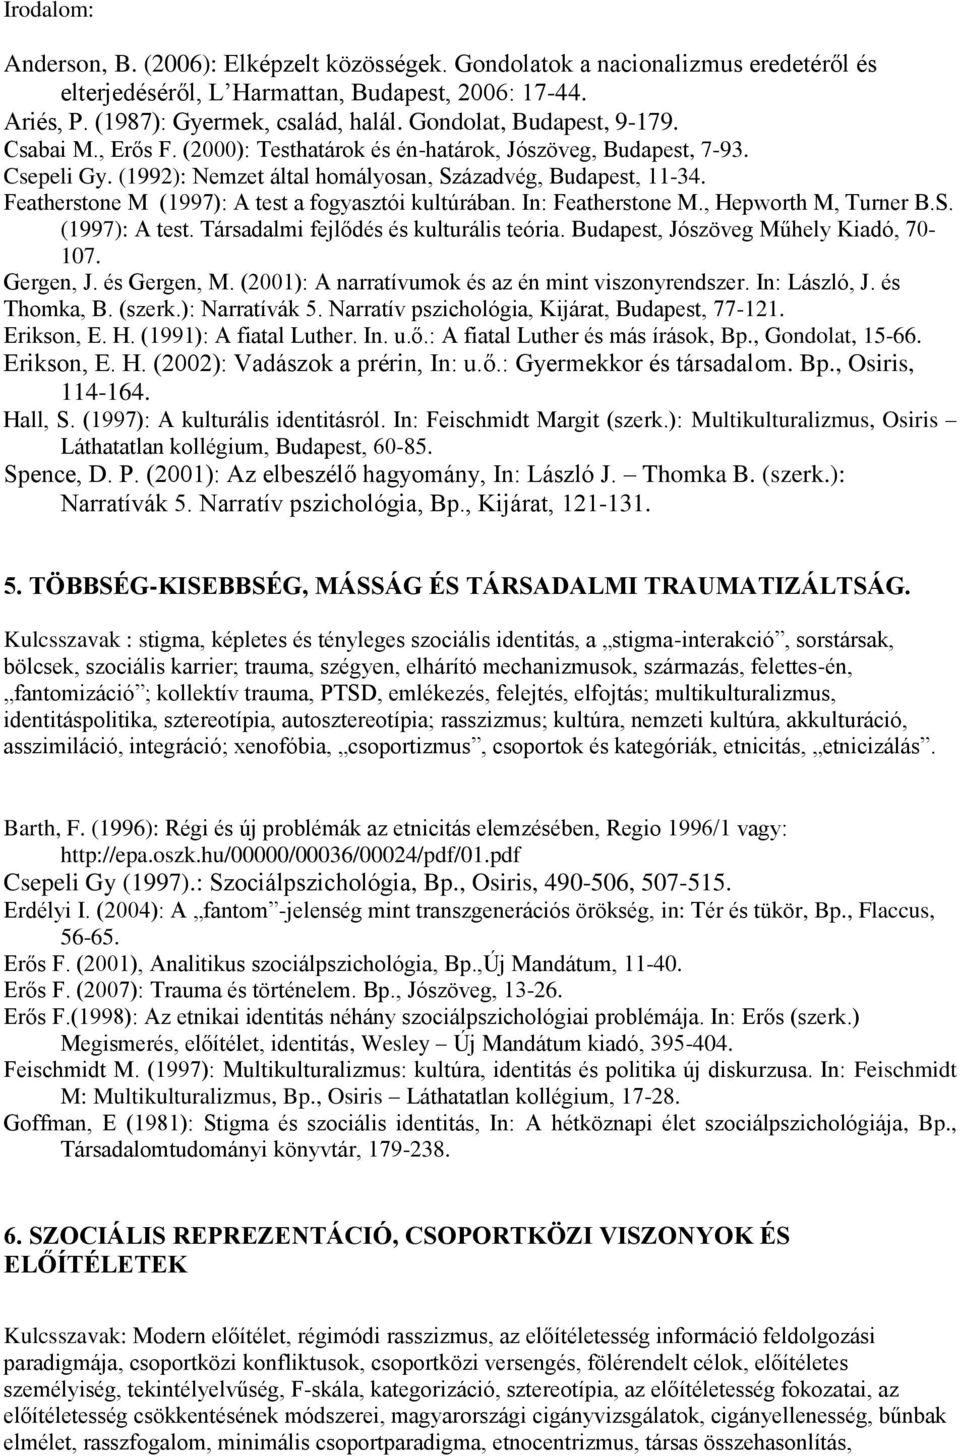 Featherstone M (1997): A test a fogyasztói kultúrában. In: Featherstone M., Hepworth M, Turner B.S. (1997): A test. Társadalmi fejlődés és kulturális teória. Budapest, Jószöveg Műhely Kiadó, 70-107.